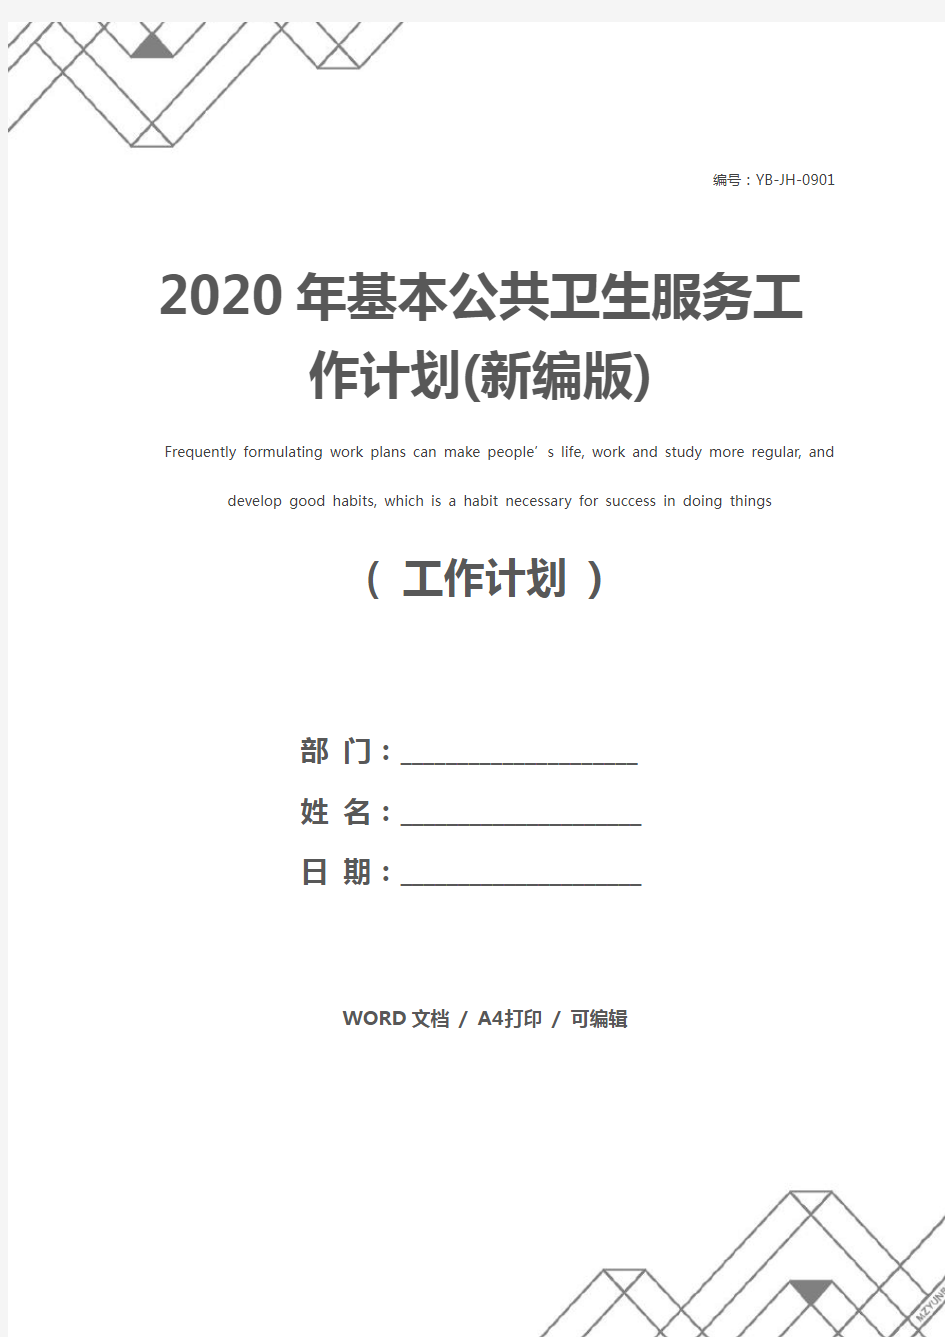 2020年基本公共卫生服务工作计划(新编版)